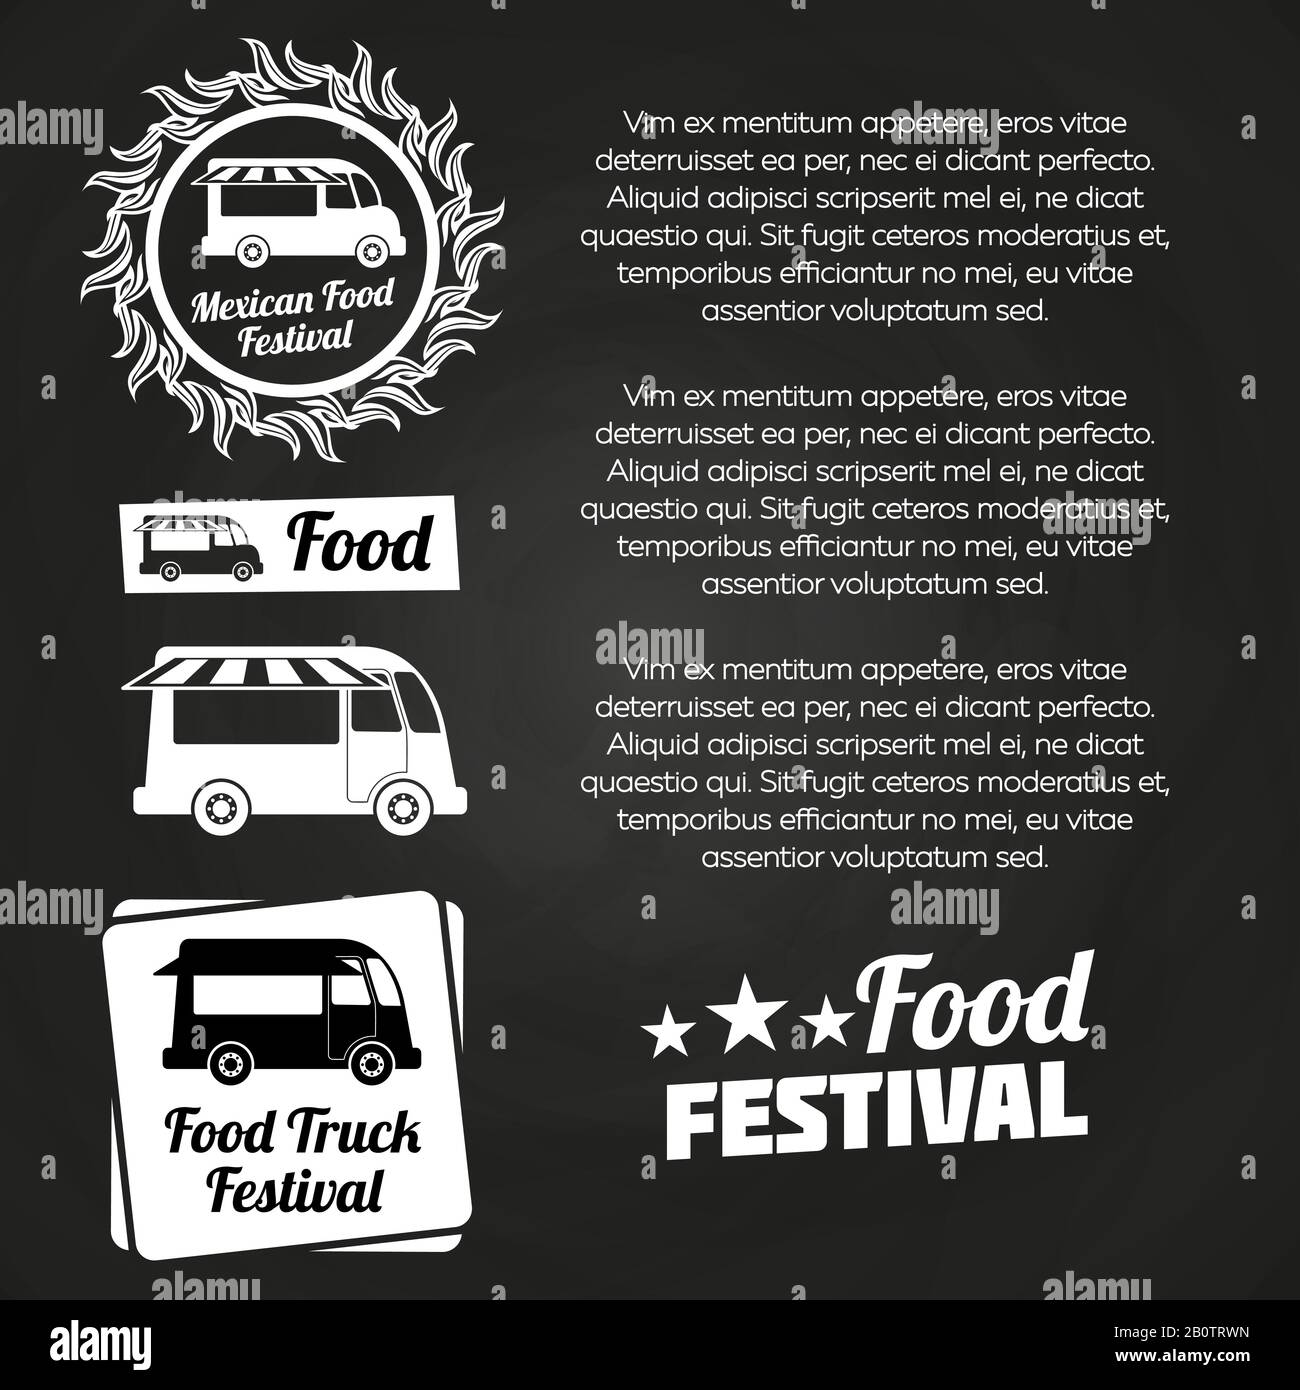 Lavagna alimentare festival poster design con etichette alimentari e camion alimentari. Illustrazione del vettore Illustrazione Vettoriale